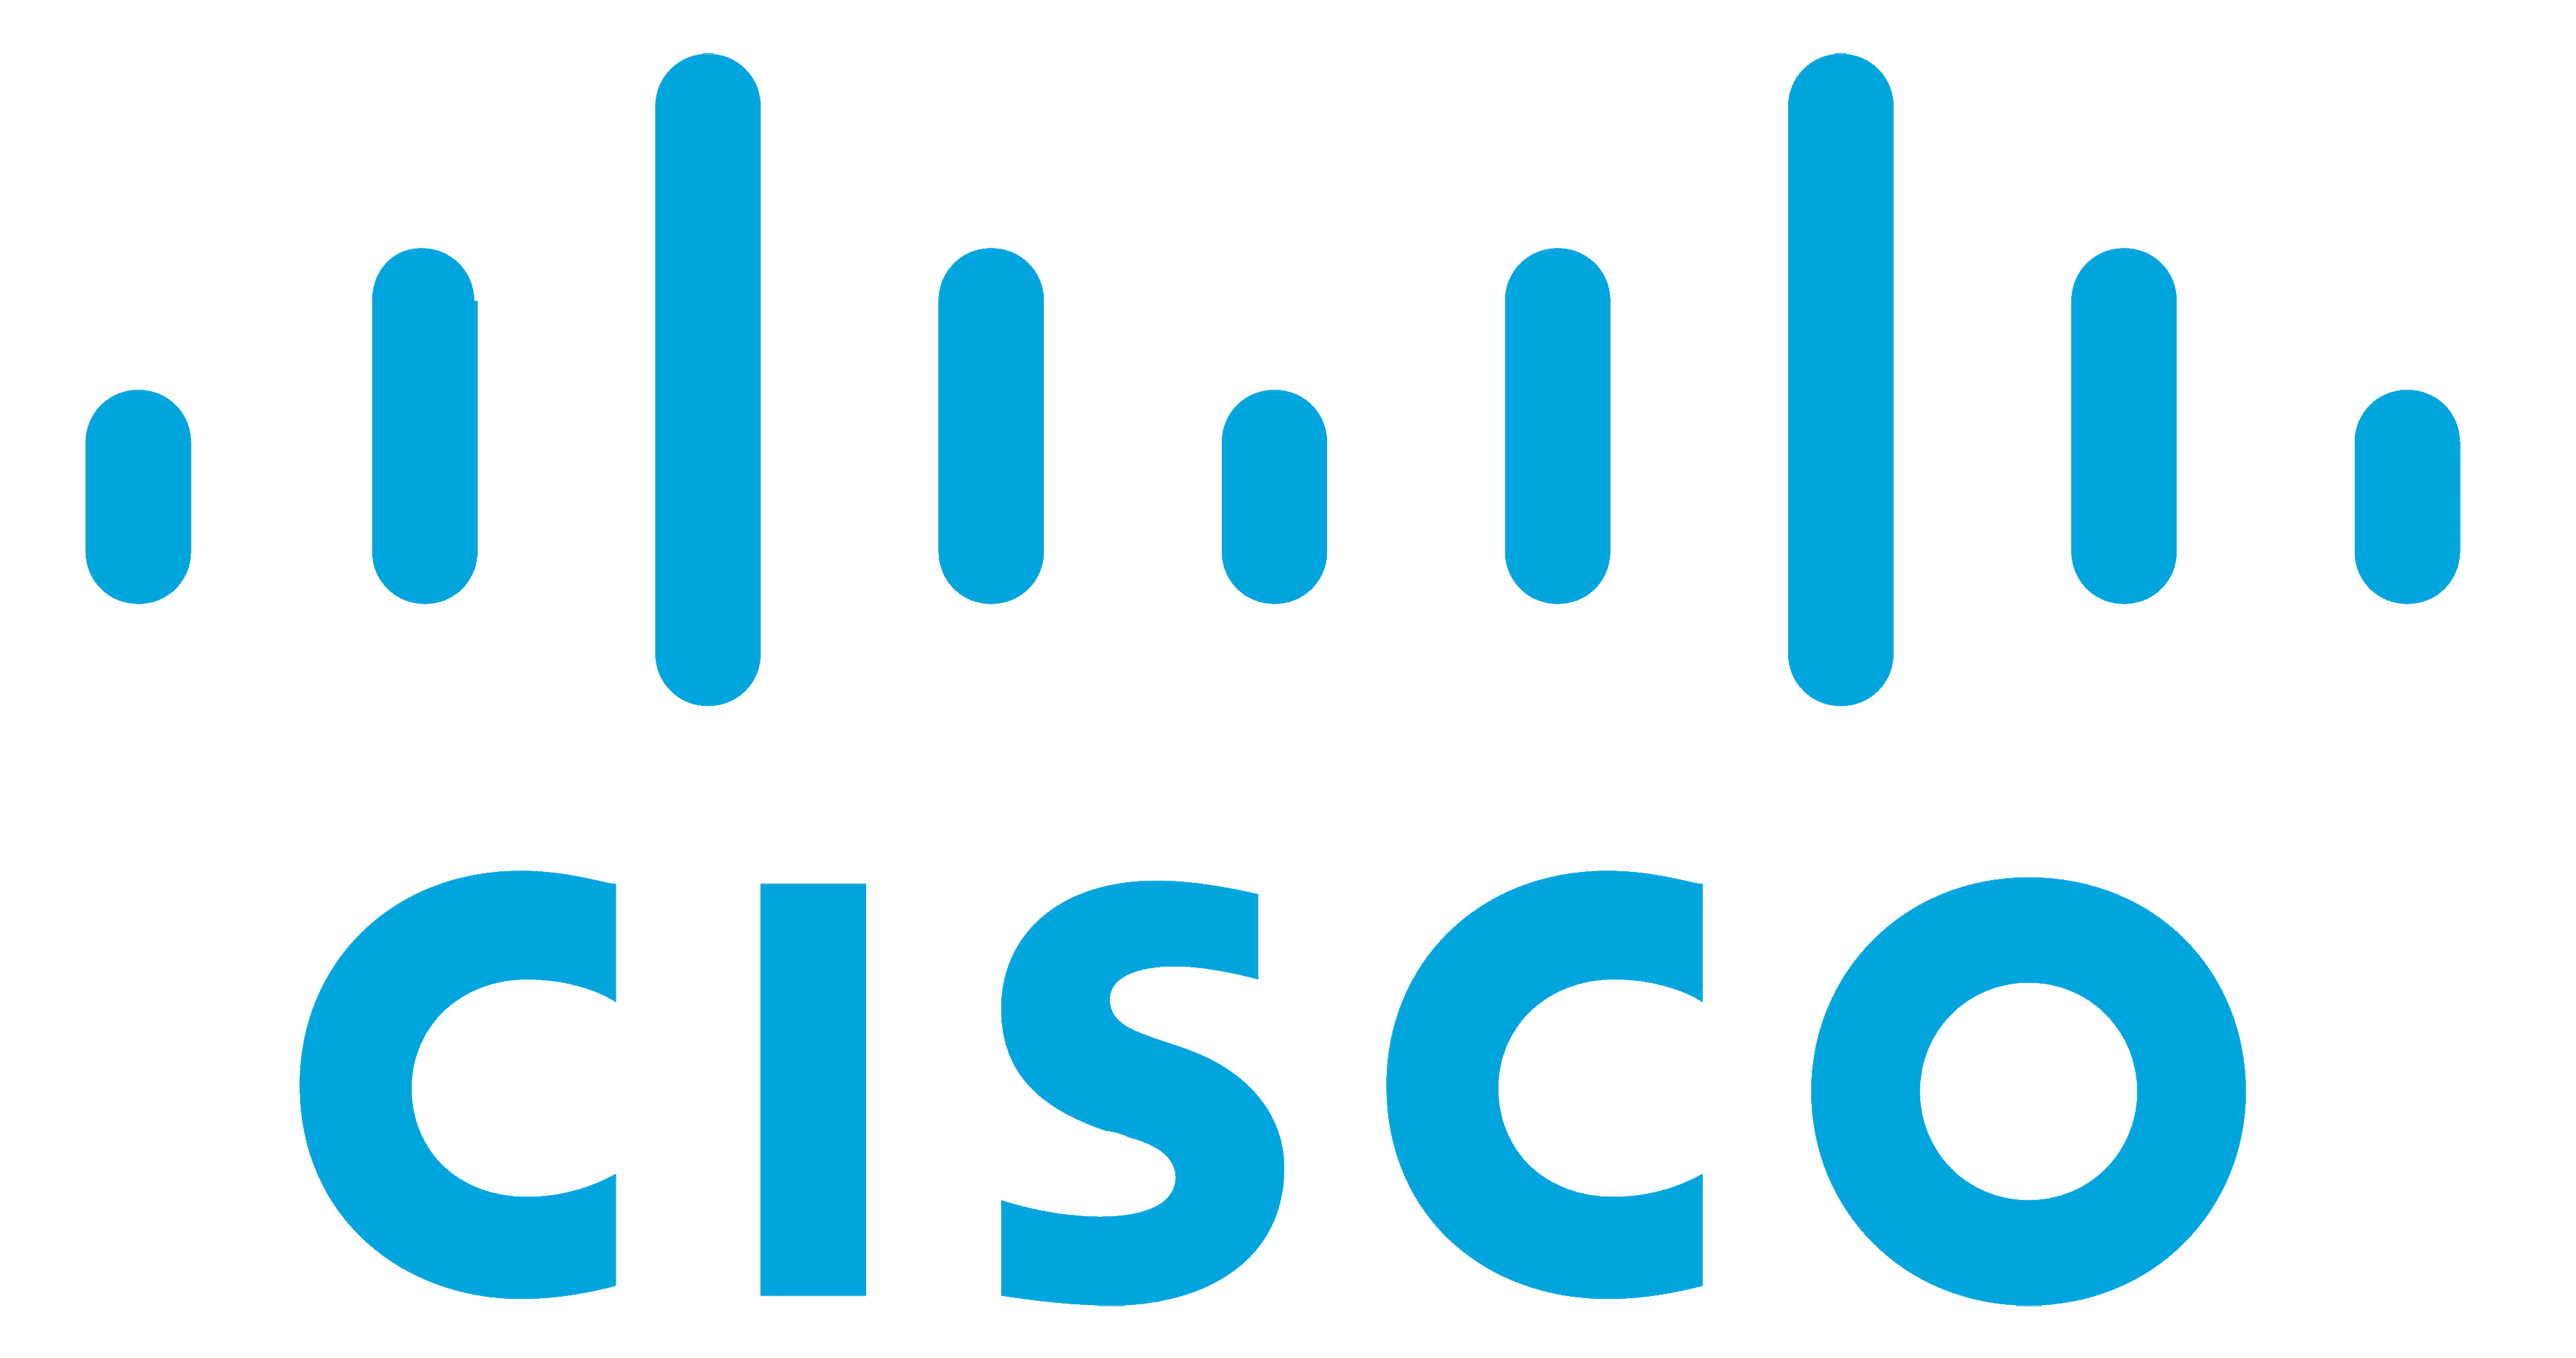 Cisco-logo-1.png